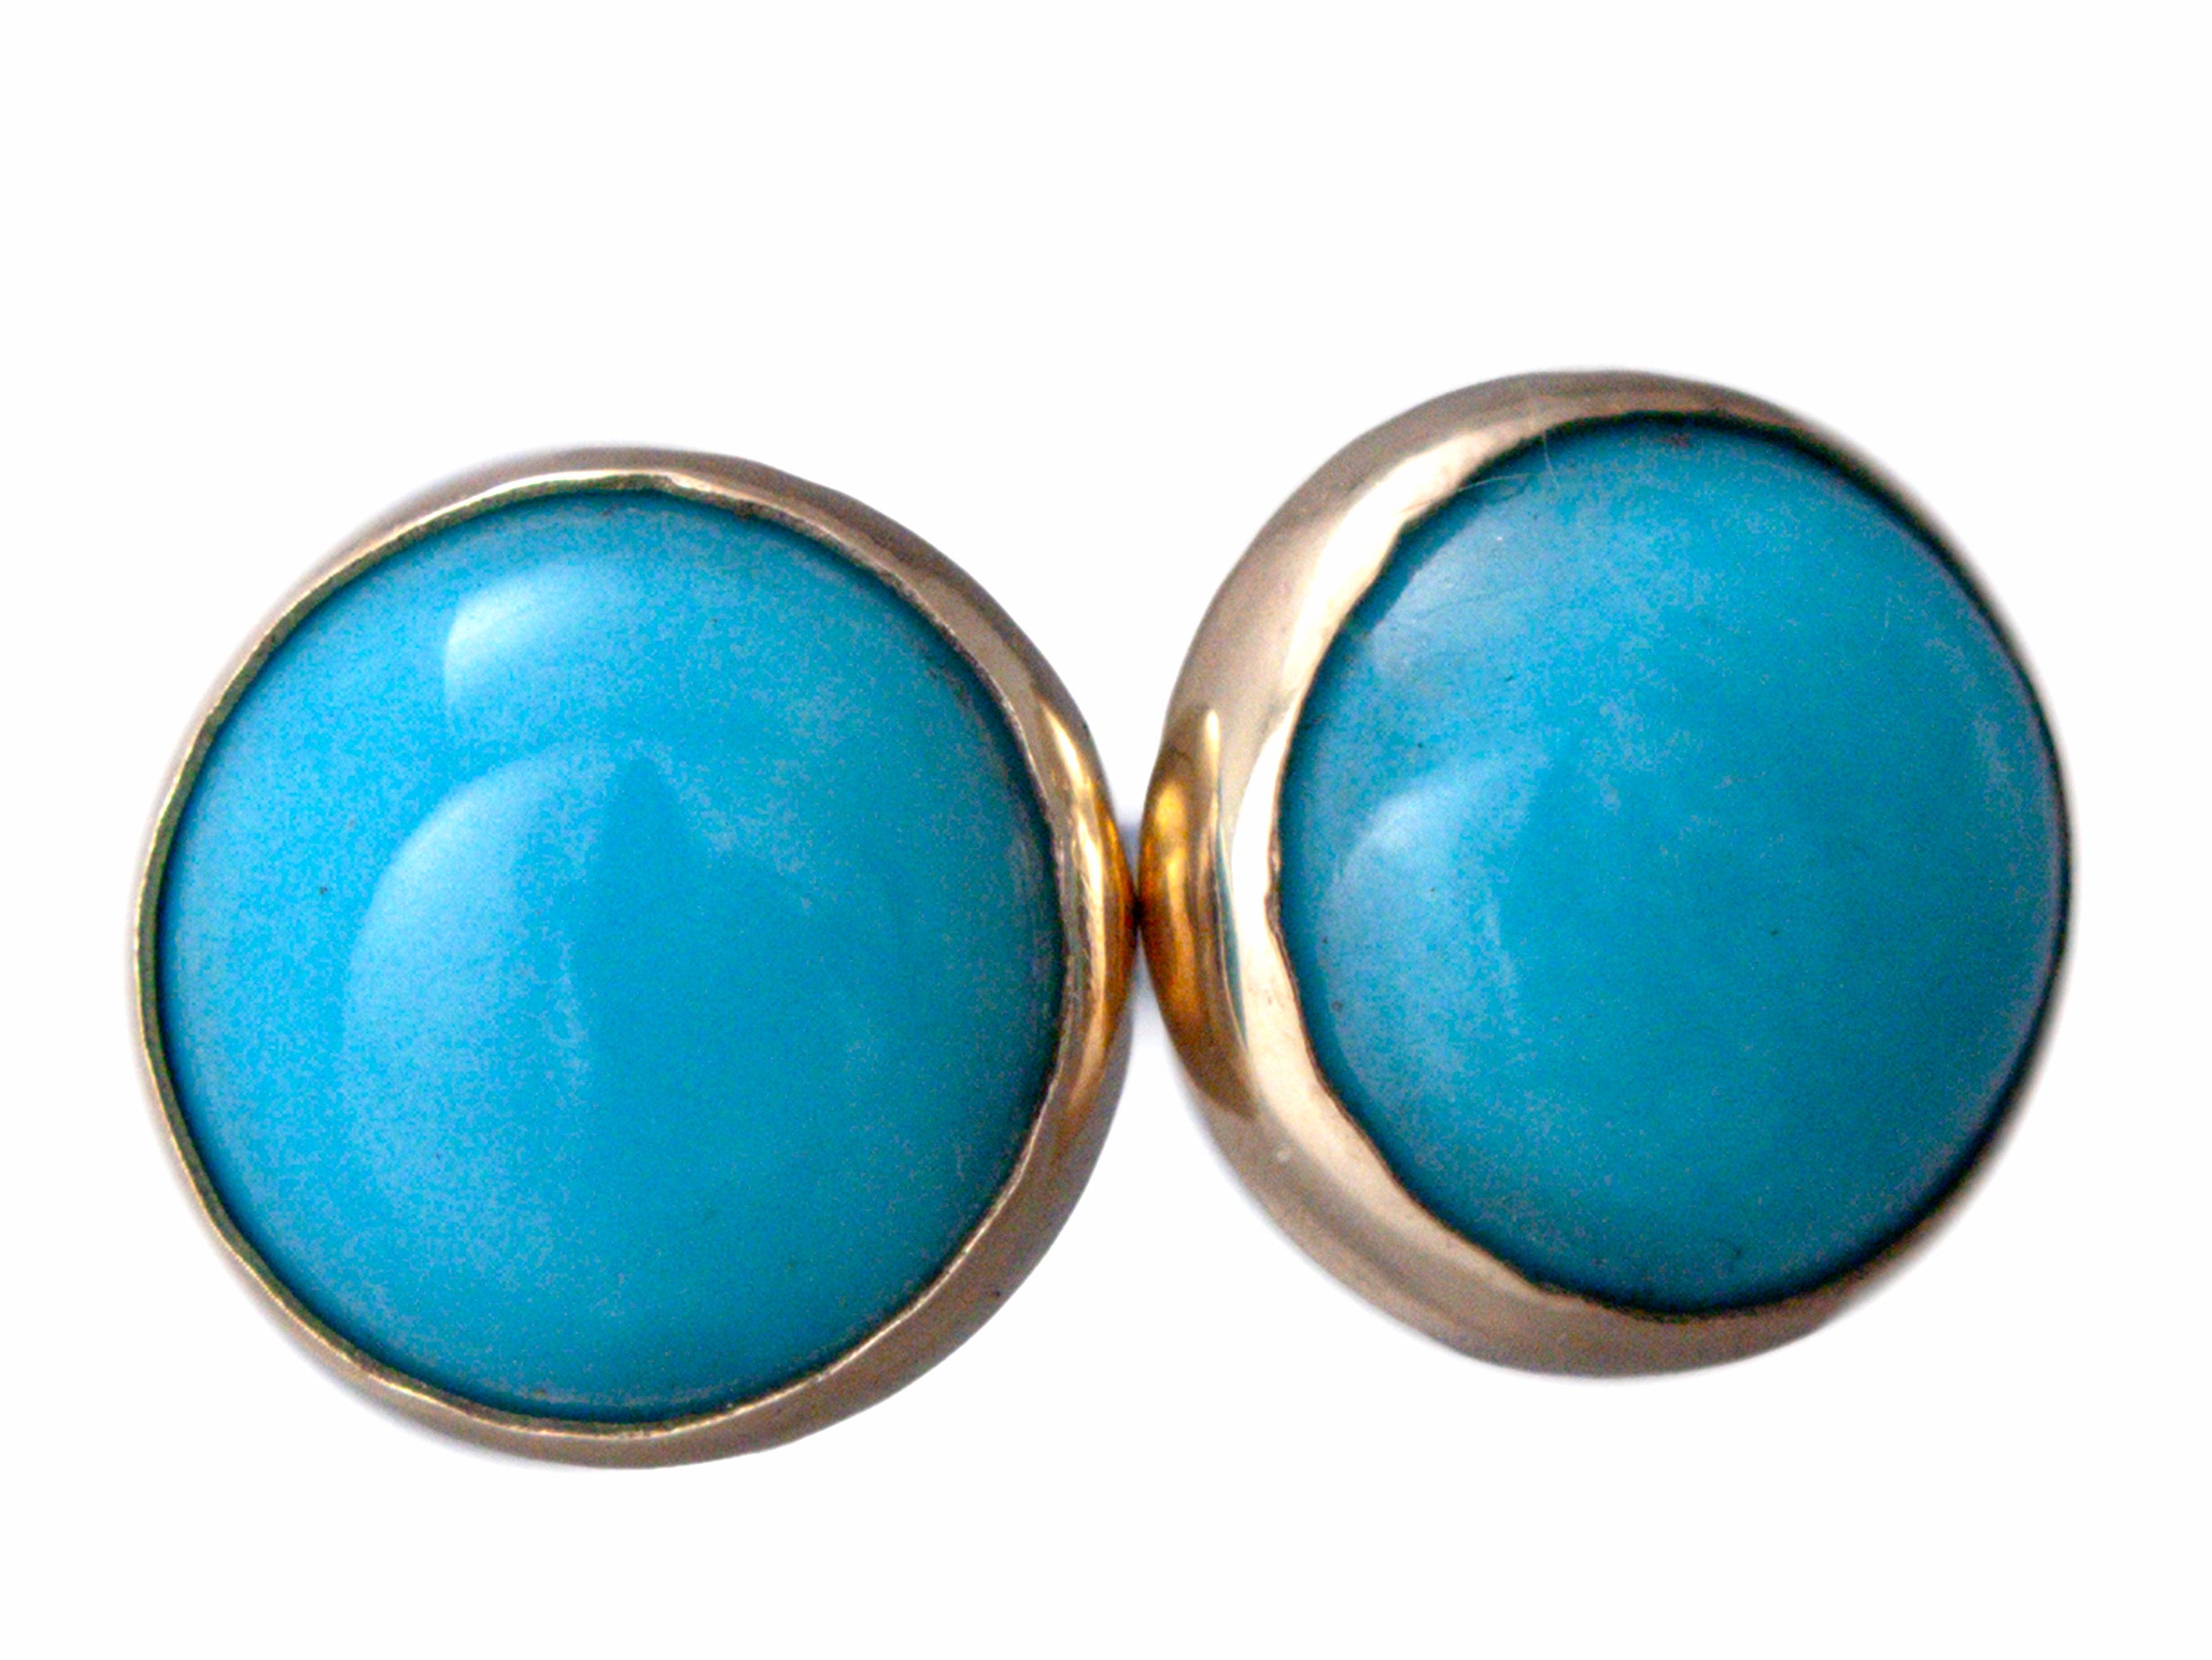 Light Blue Turquoise Earrings - Large Oval, Large Teardrop – Dames a la Mode